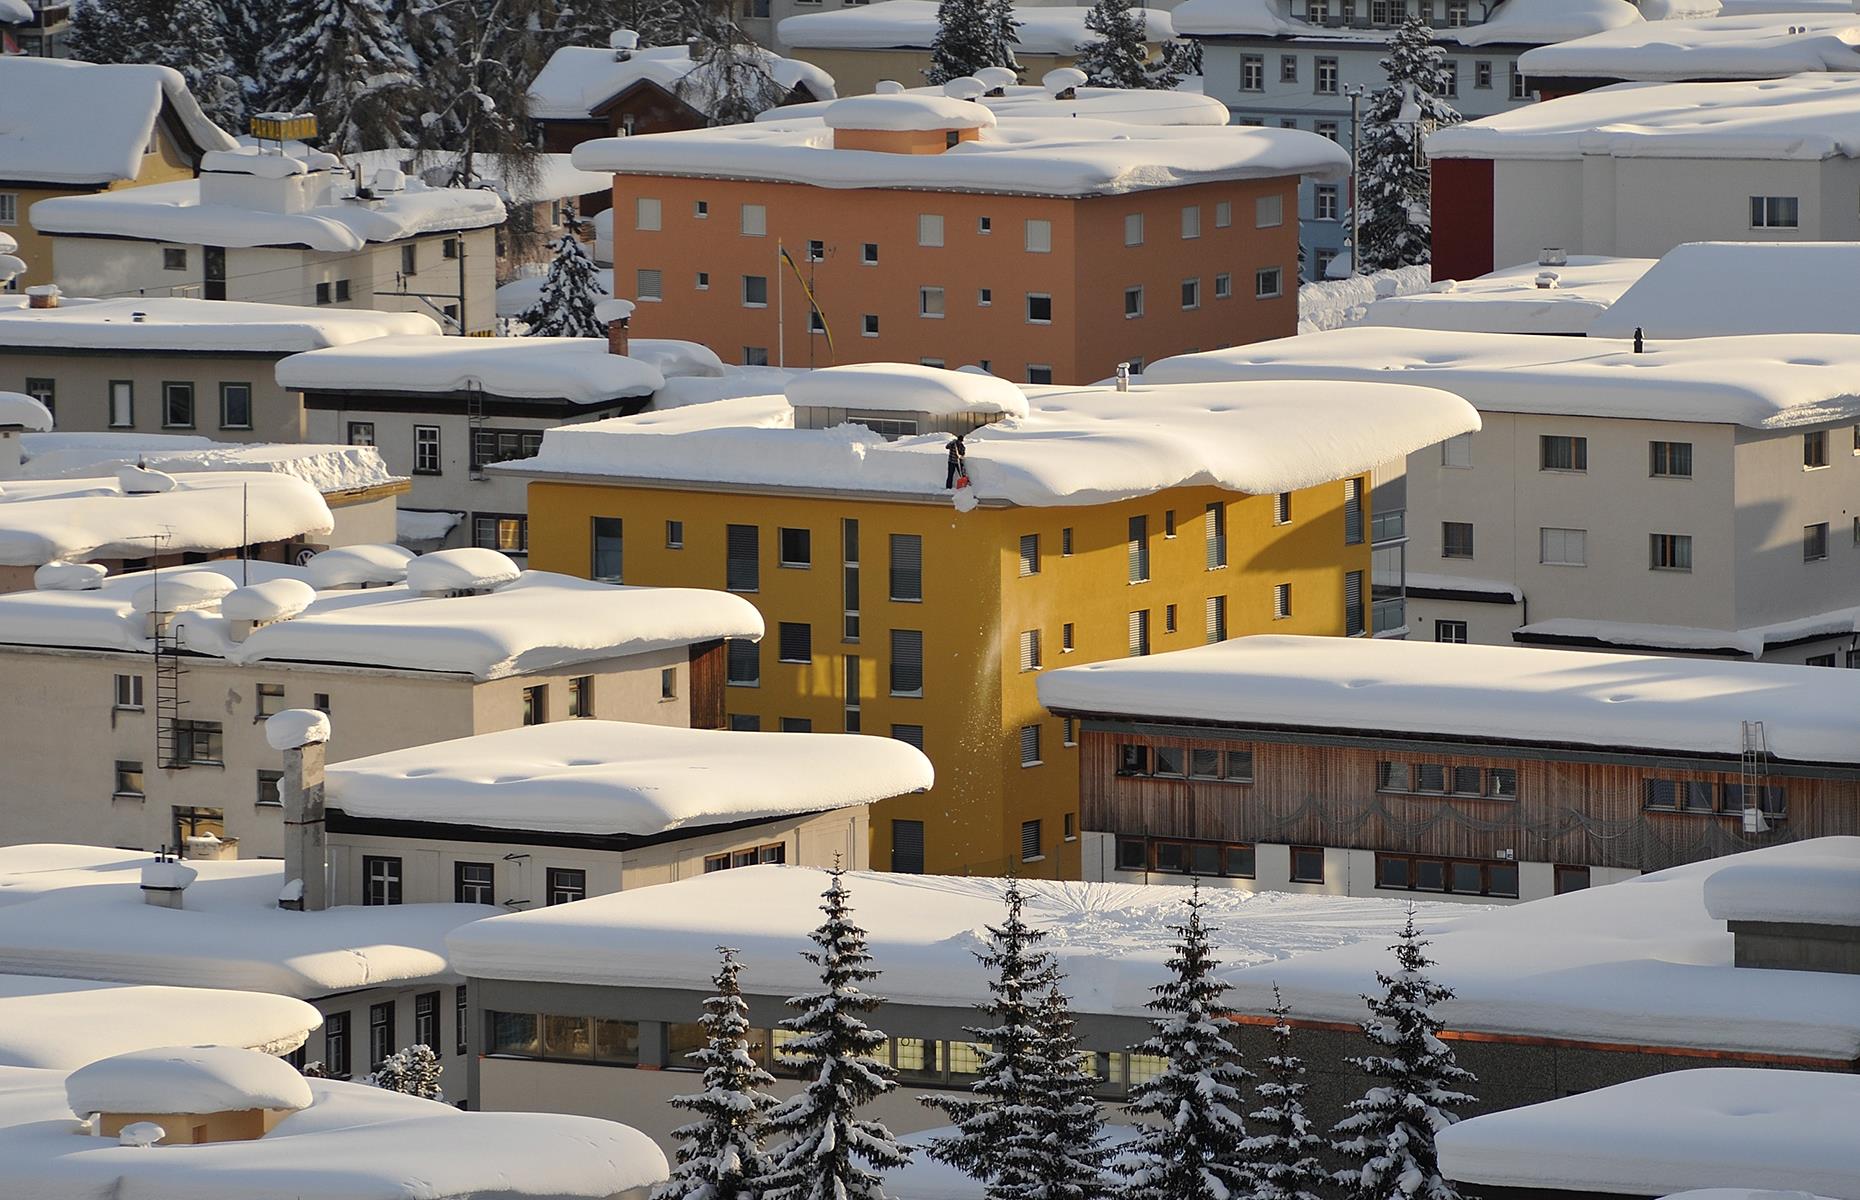 Houses straining under snowfall, Graubünden, Switzerland